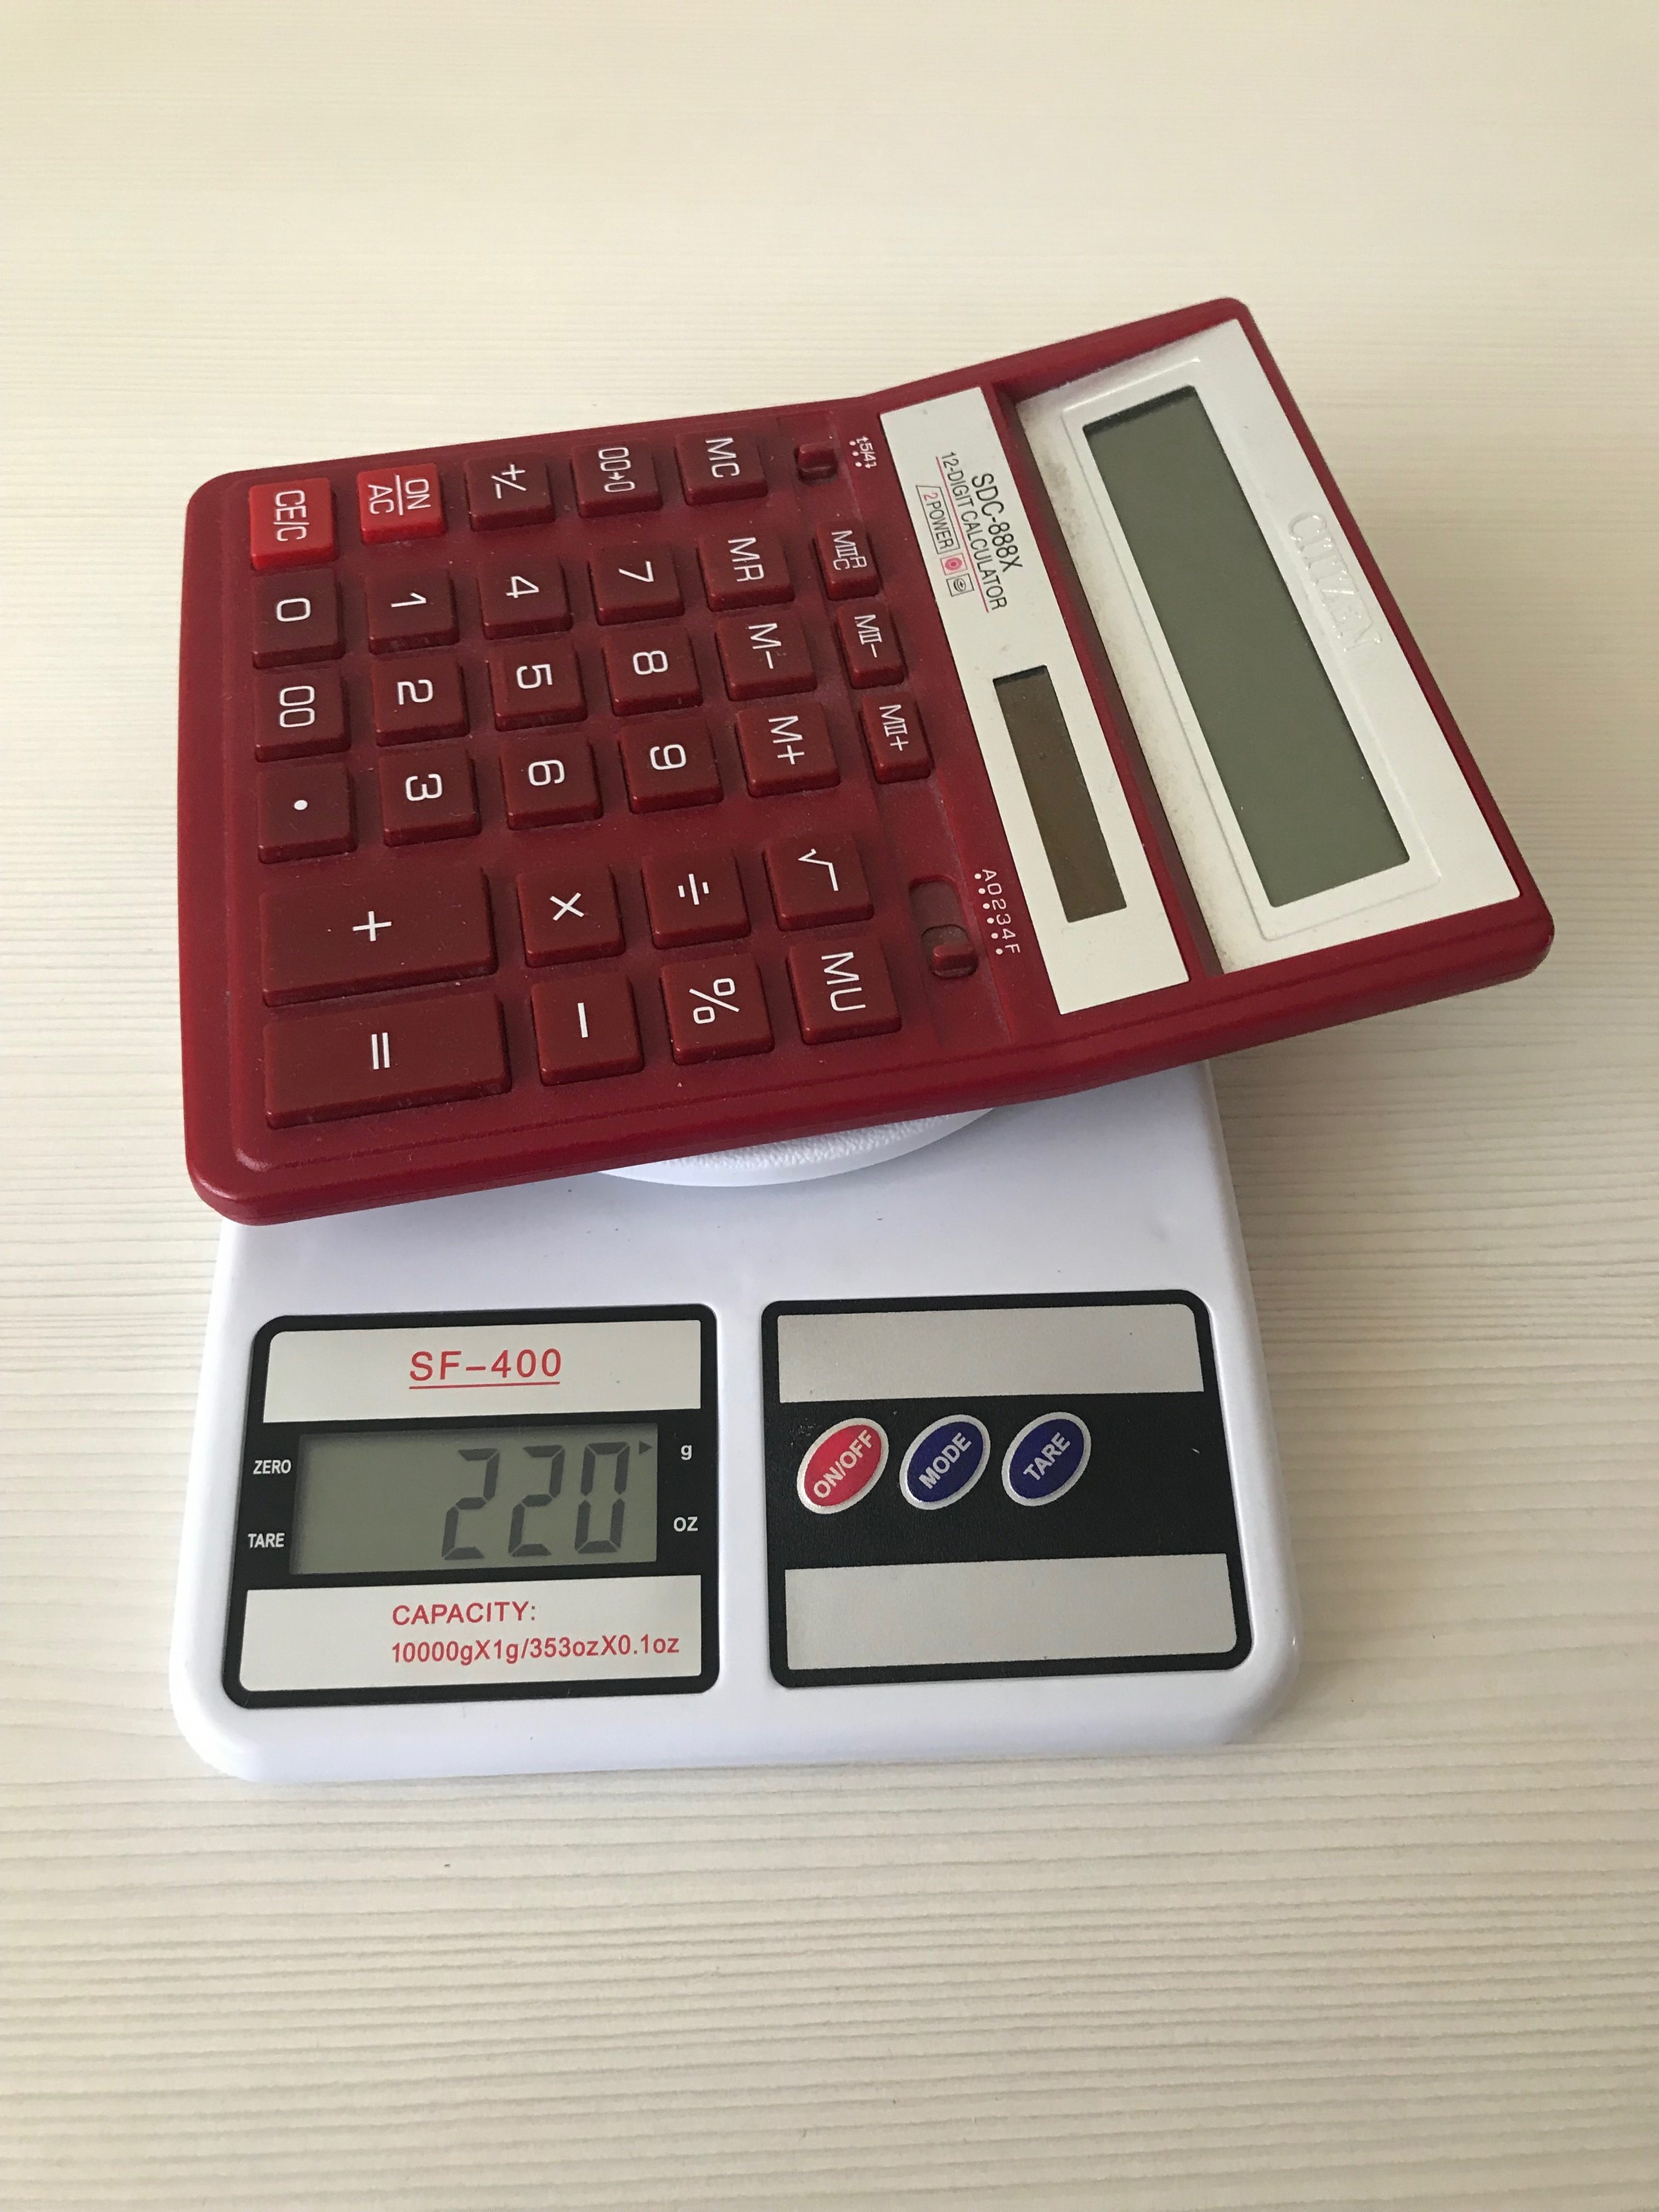 вес калькулятора